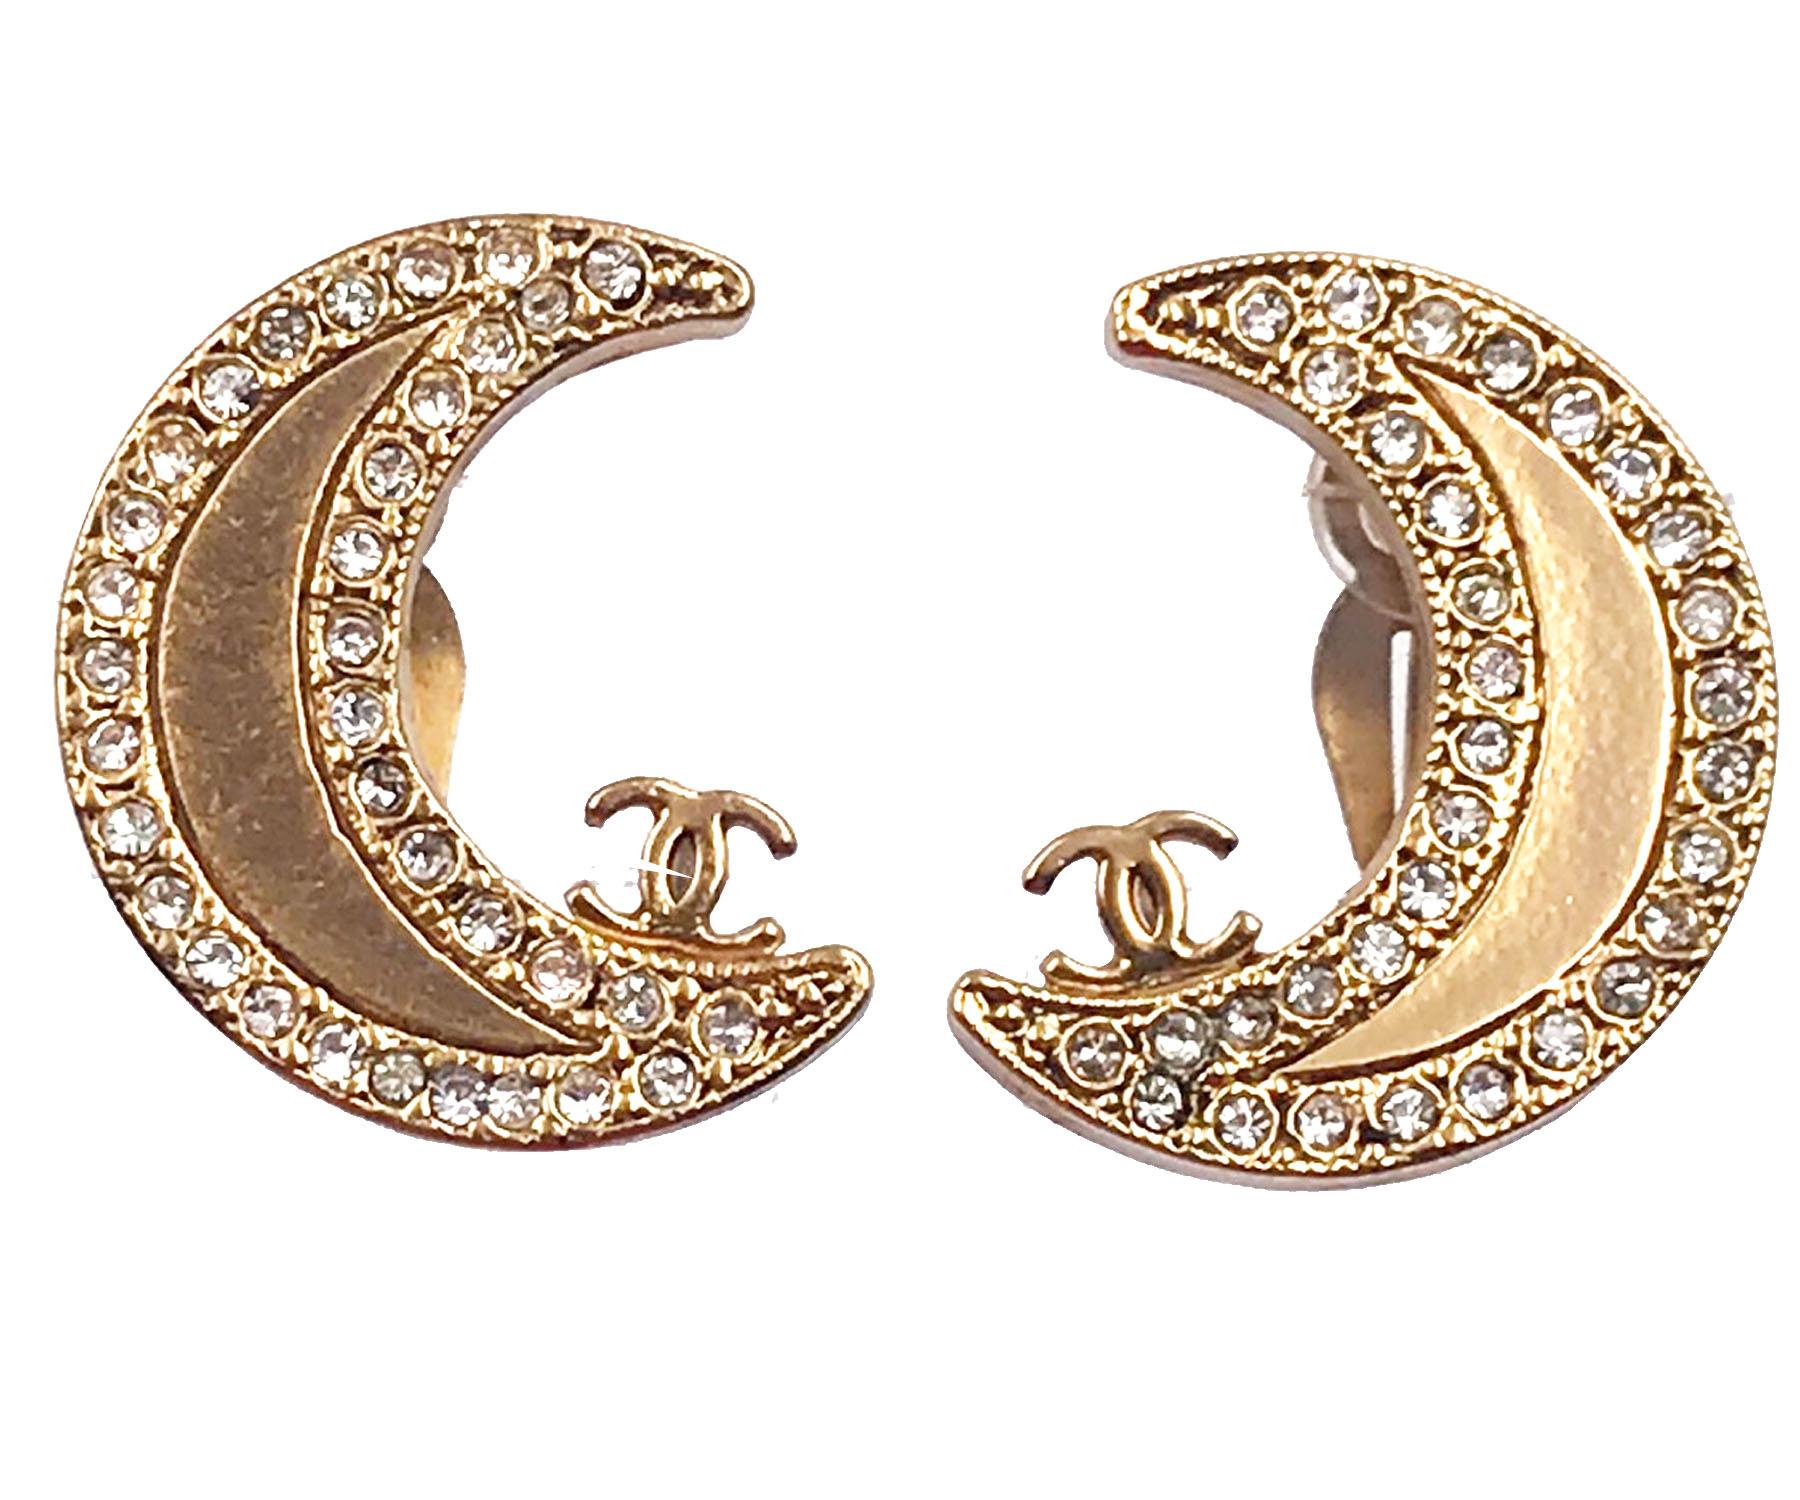 Chanel Seltene Gold CC Mond Kristall-Ohrclips auf Ohrringe

*Markierung 01
*Hergestellt in Frankreich
*Kommt mit dem Originalkarton

-Es ist ungefähr 0,9